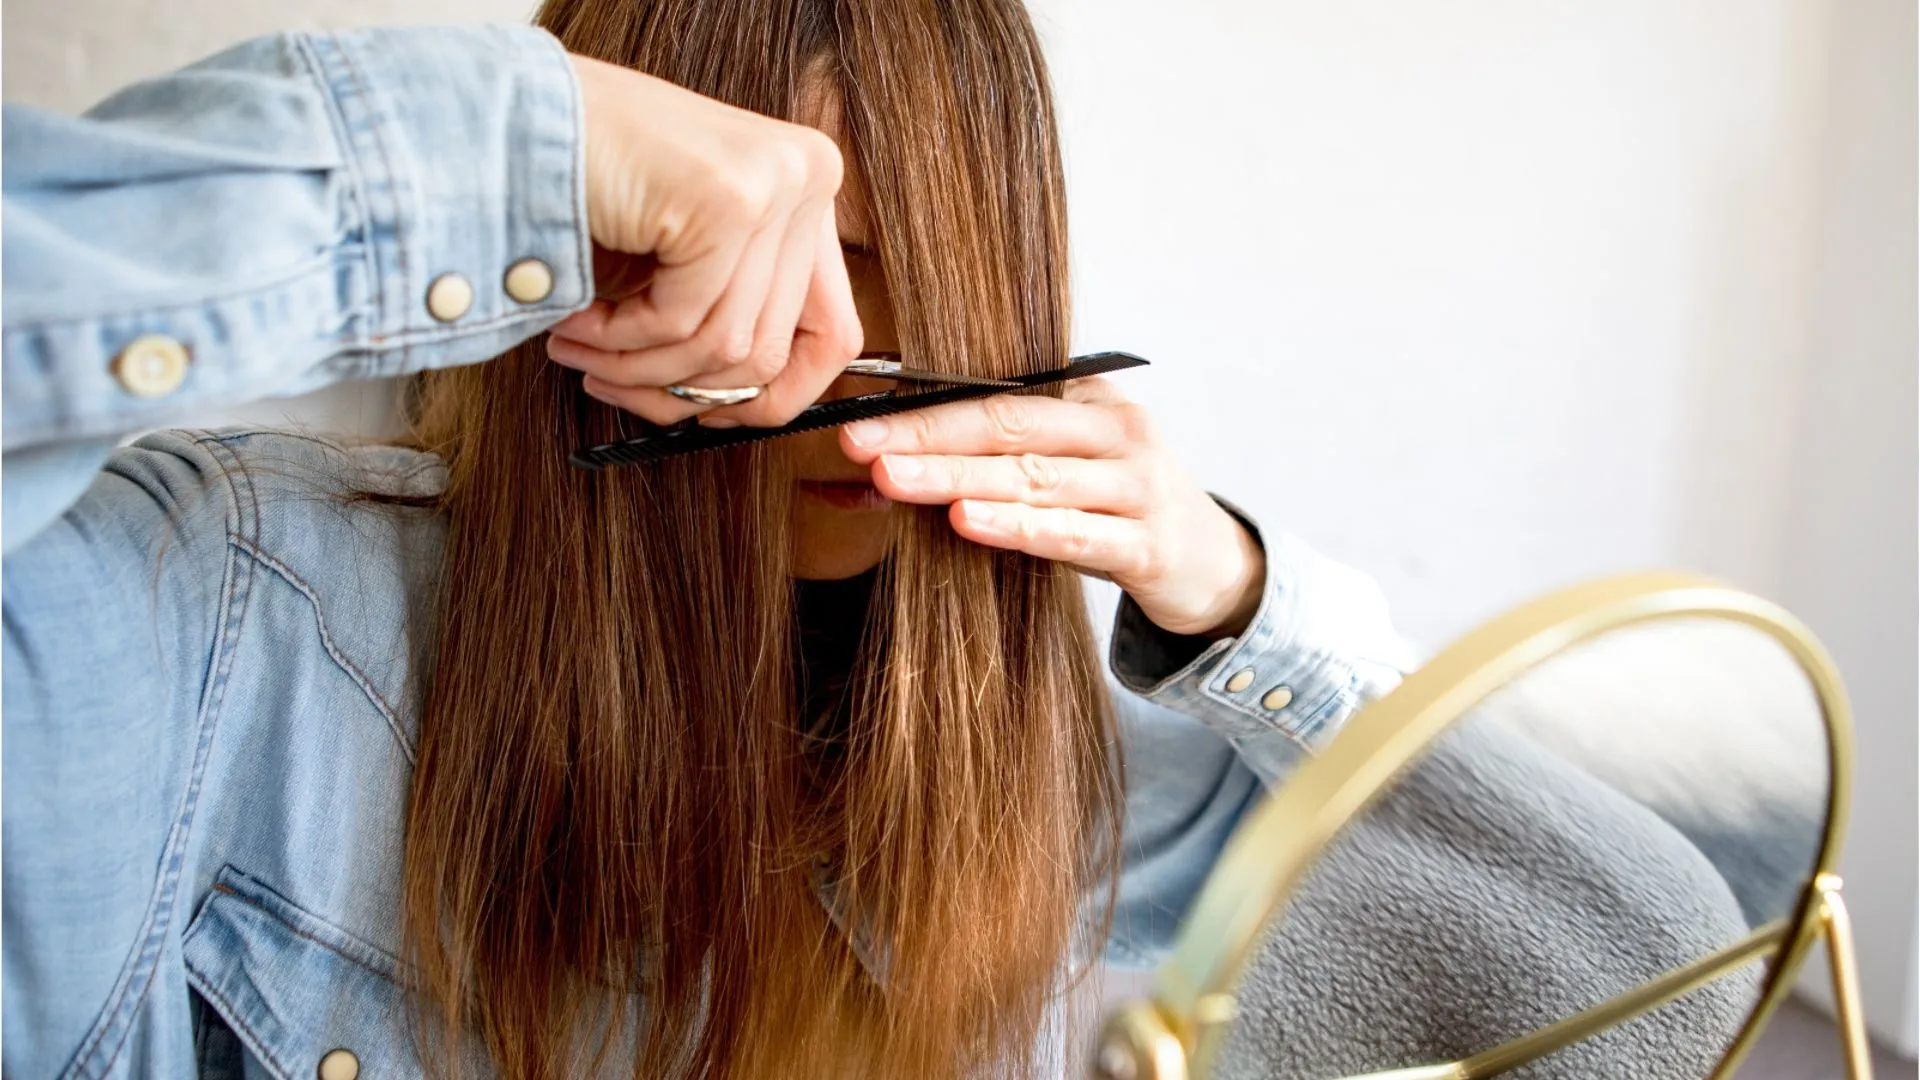 Córtate el pelo: Los consejos más importantes para peinarse uno mismo